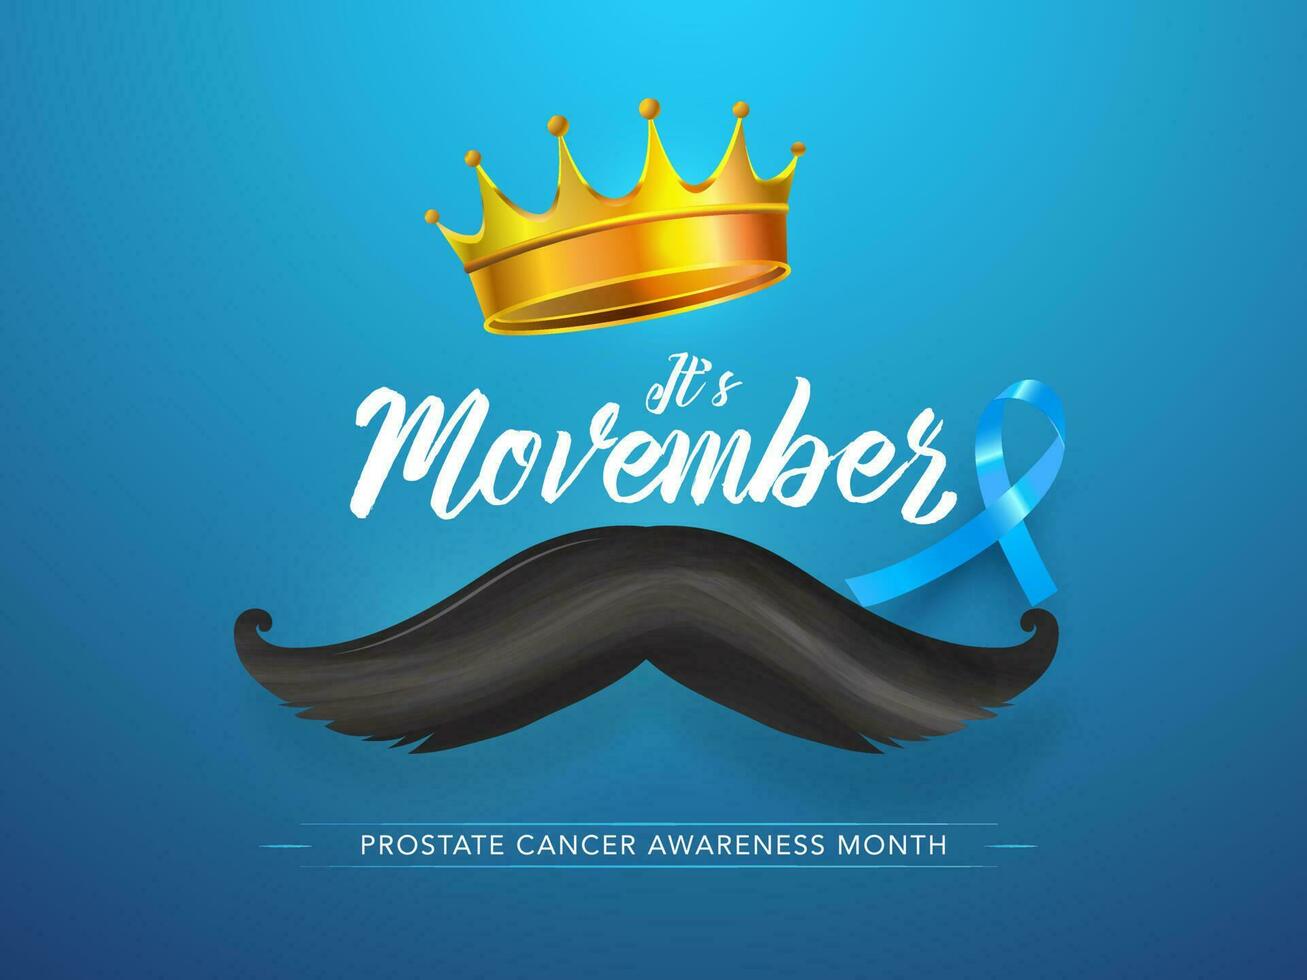 schoonschrift van zijn movember met gouden kroon, snor en blauw lint voor prostaat kanker bewustzijn maand concept gebaseerd poster ontwerp. vector